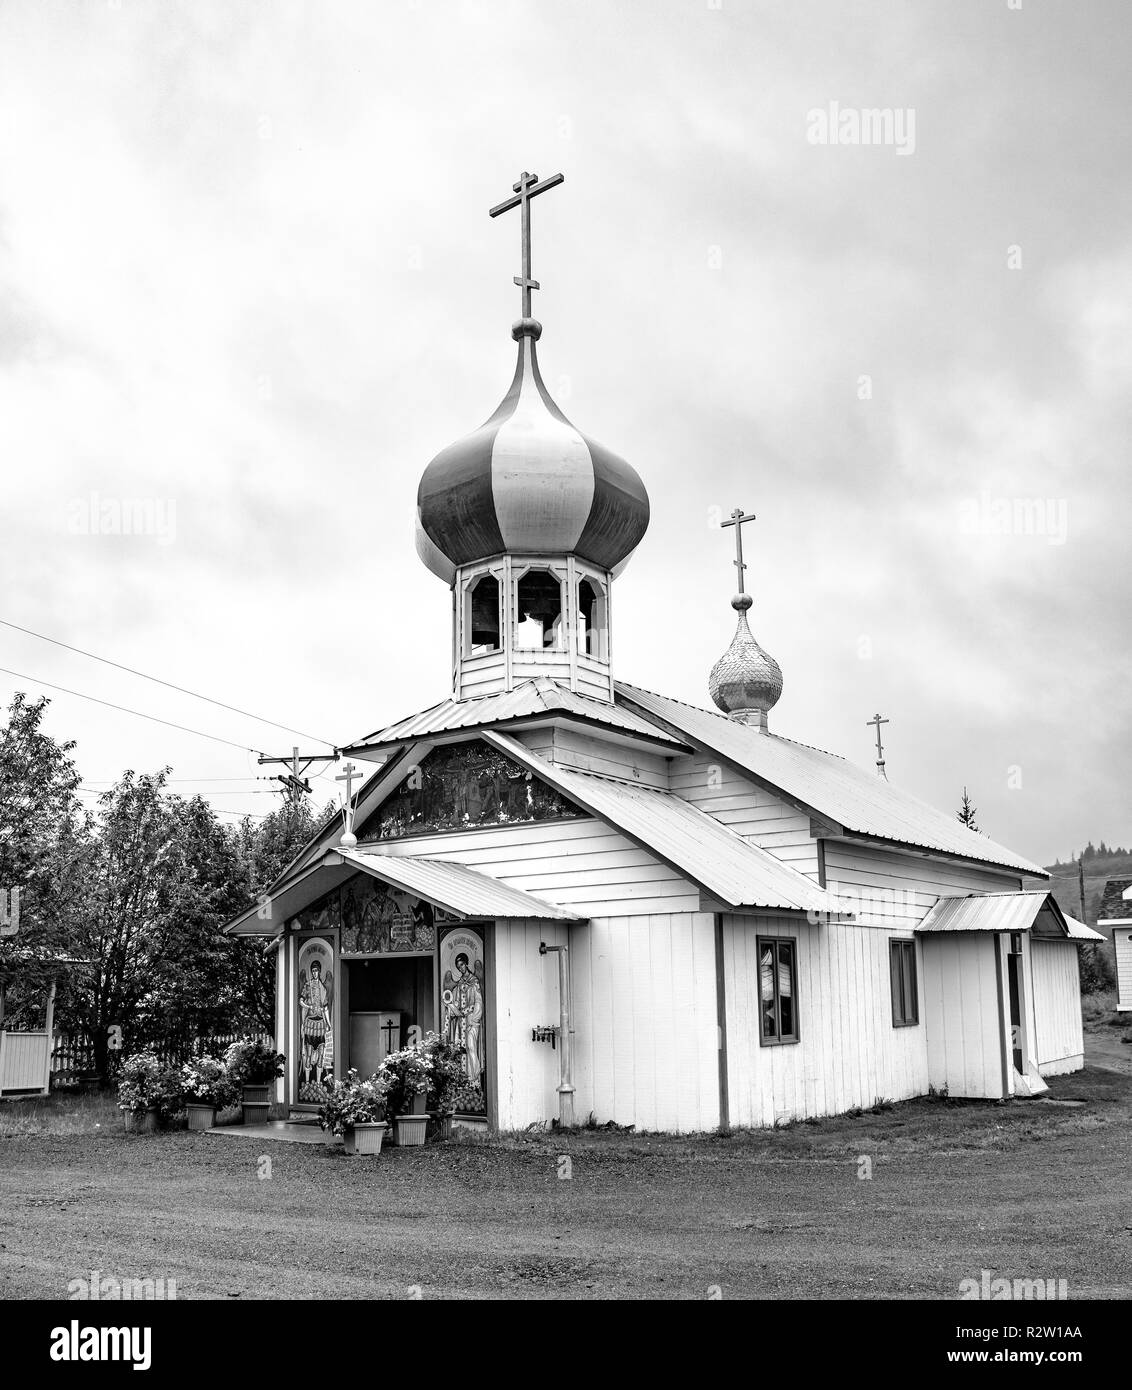 Nicholaevsk, AK - Aug 23, 2018 : une vue de l'église de St Nicolas, une église orthodoxe russe dans la région de Nikolaevsk sur la péninsule Kenai en Alaska, USA Banque D'Images